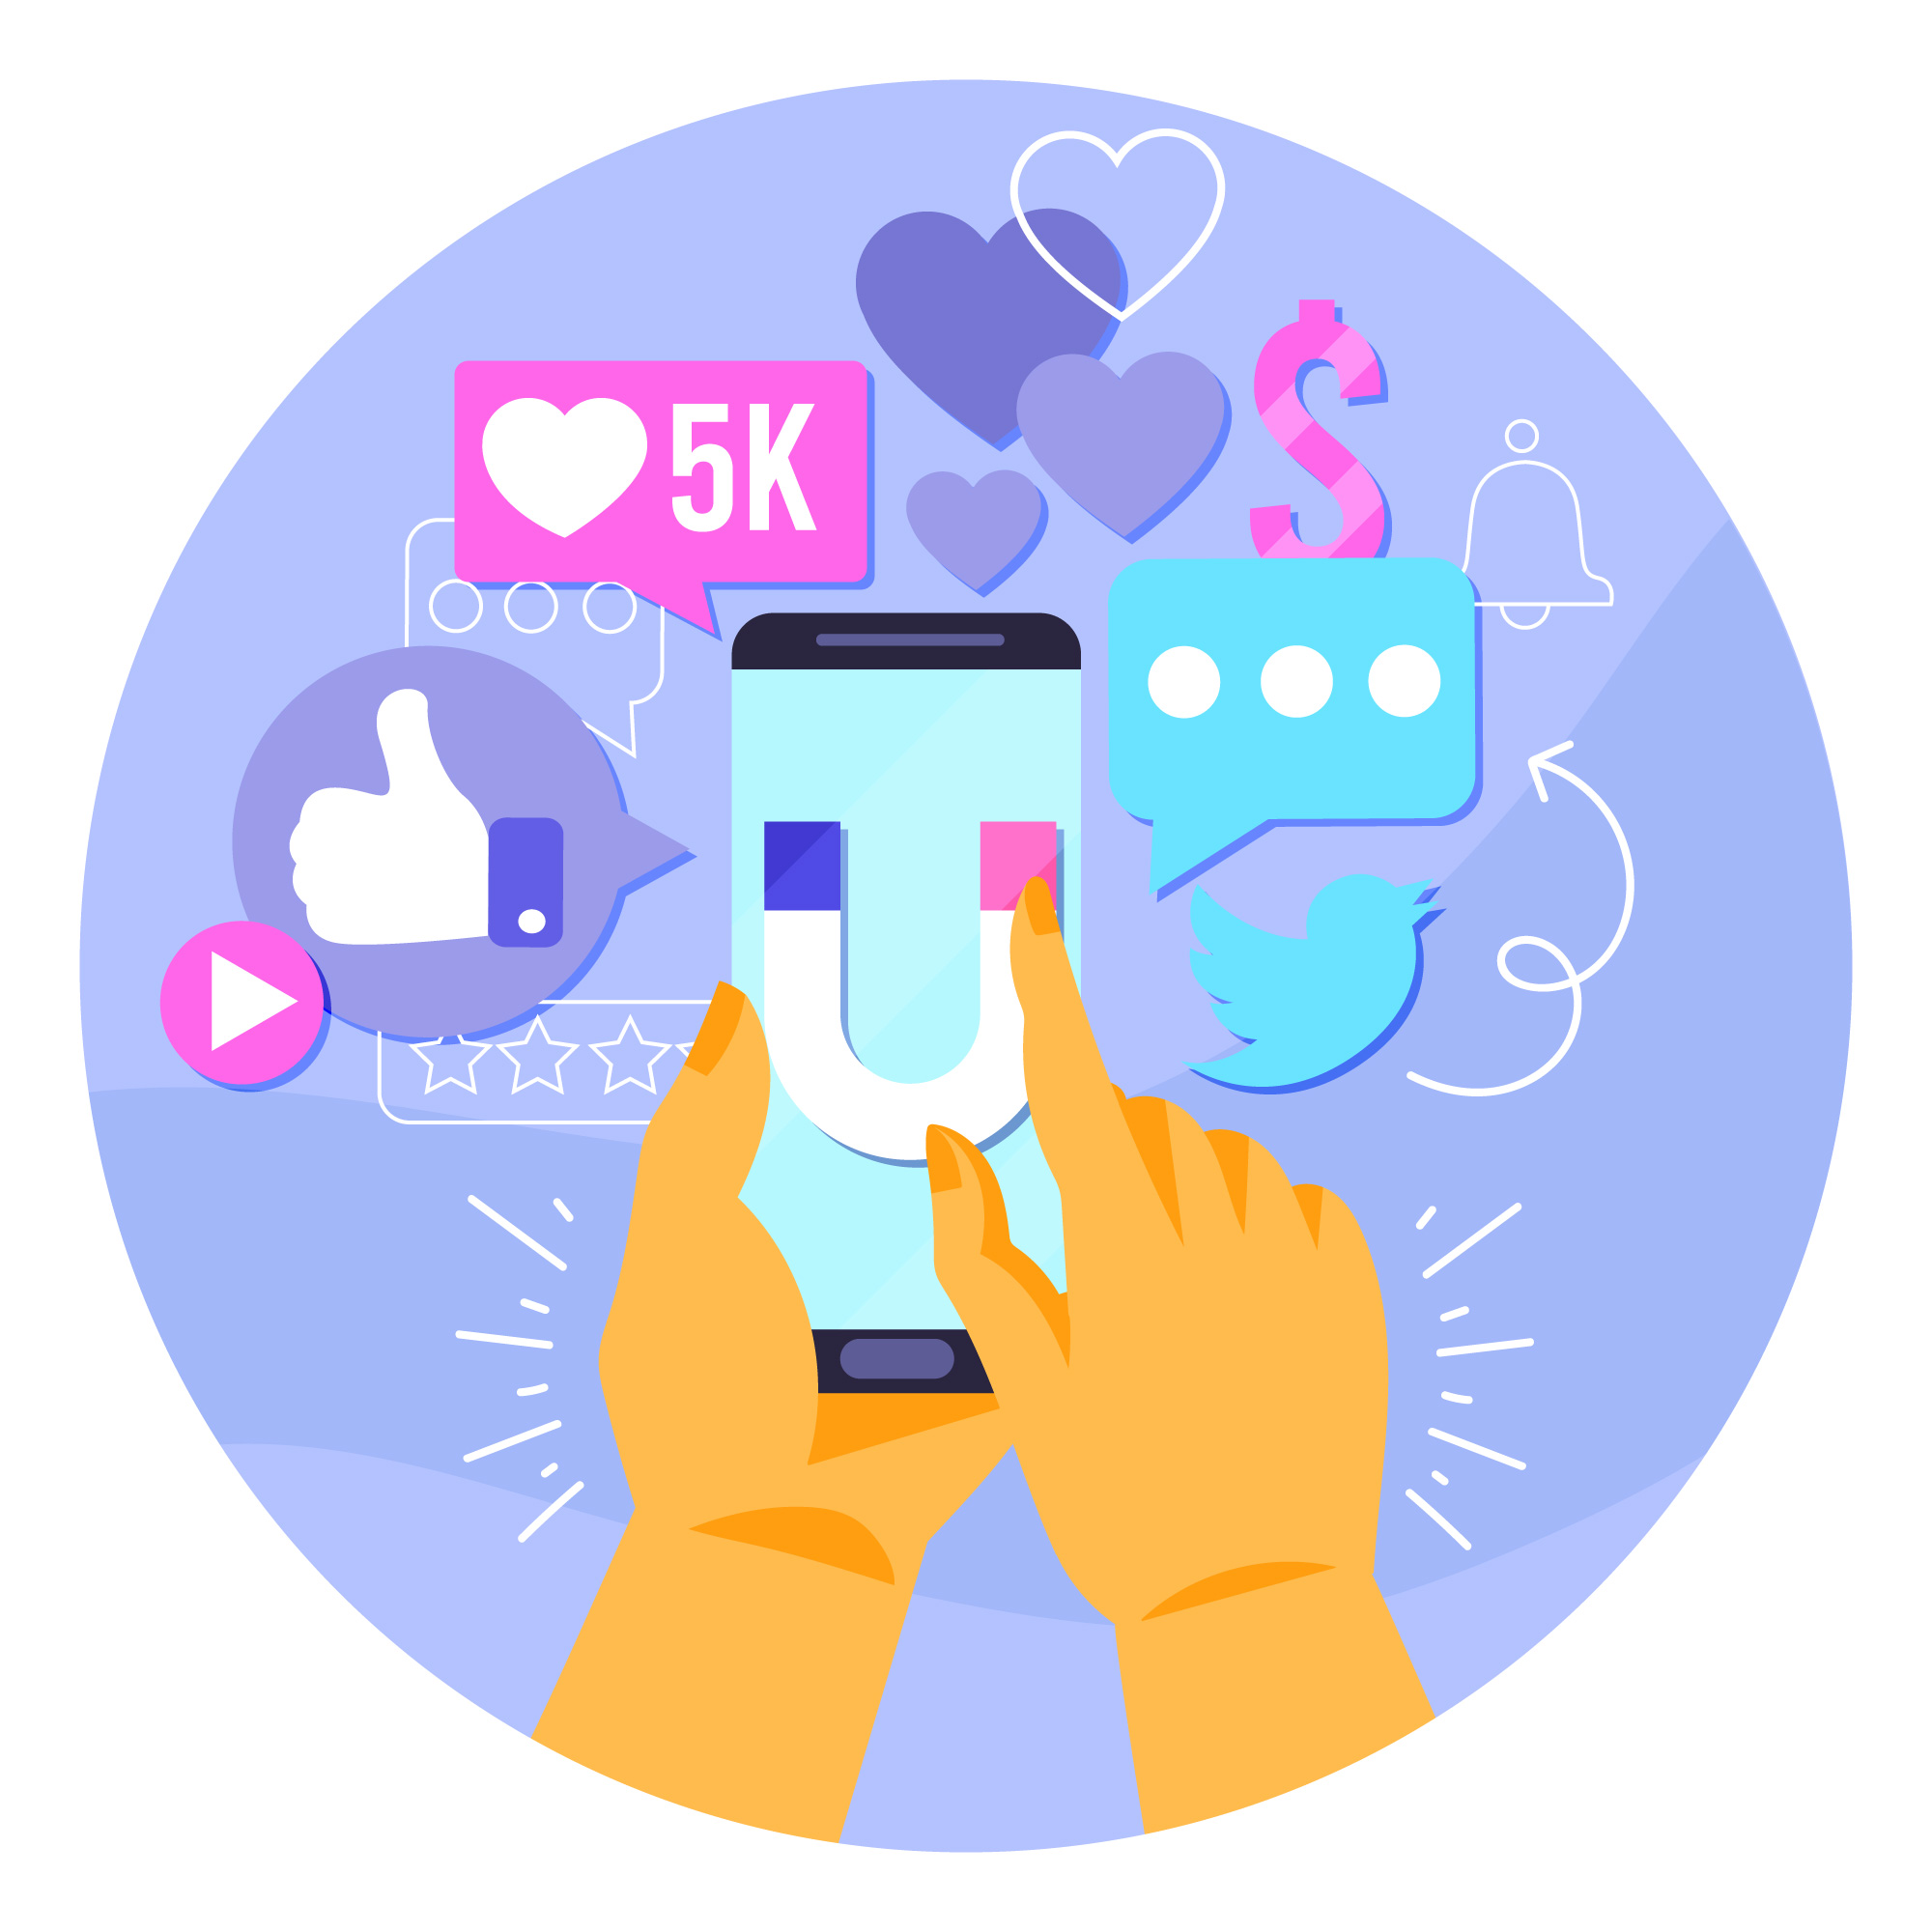 Smartphone umgeben von Likes, Tweets, Shares, Bewertungen und anderen Social-Media-Elementen